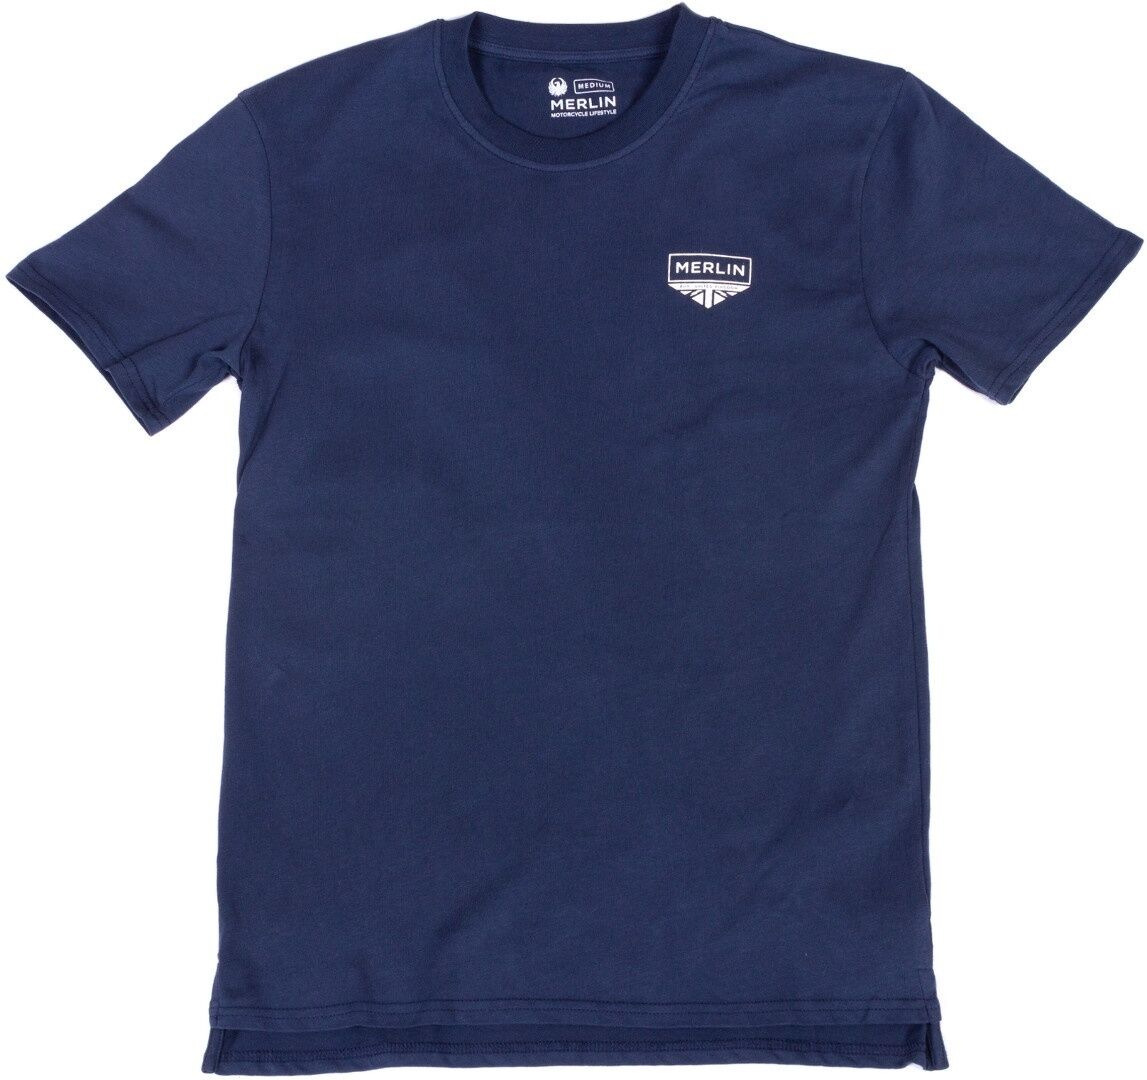 Merlin Truro Signature Camiseta - Azul (L)